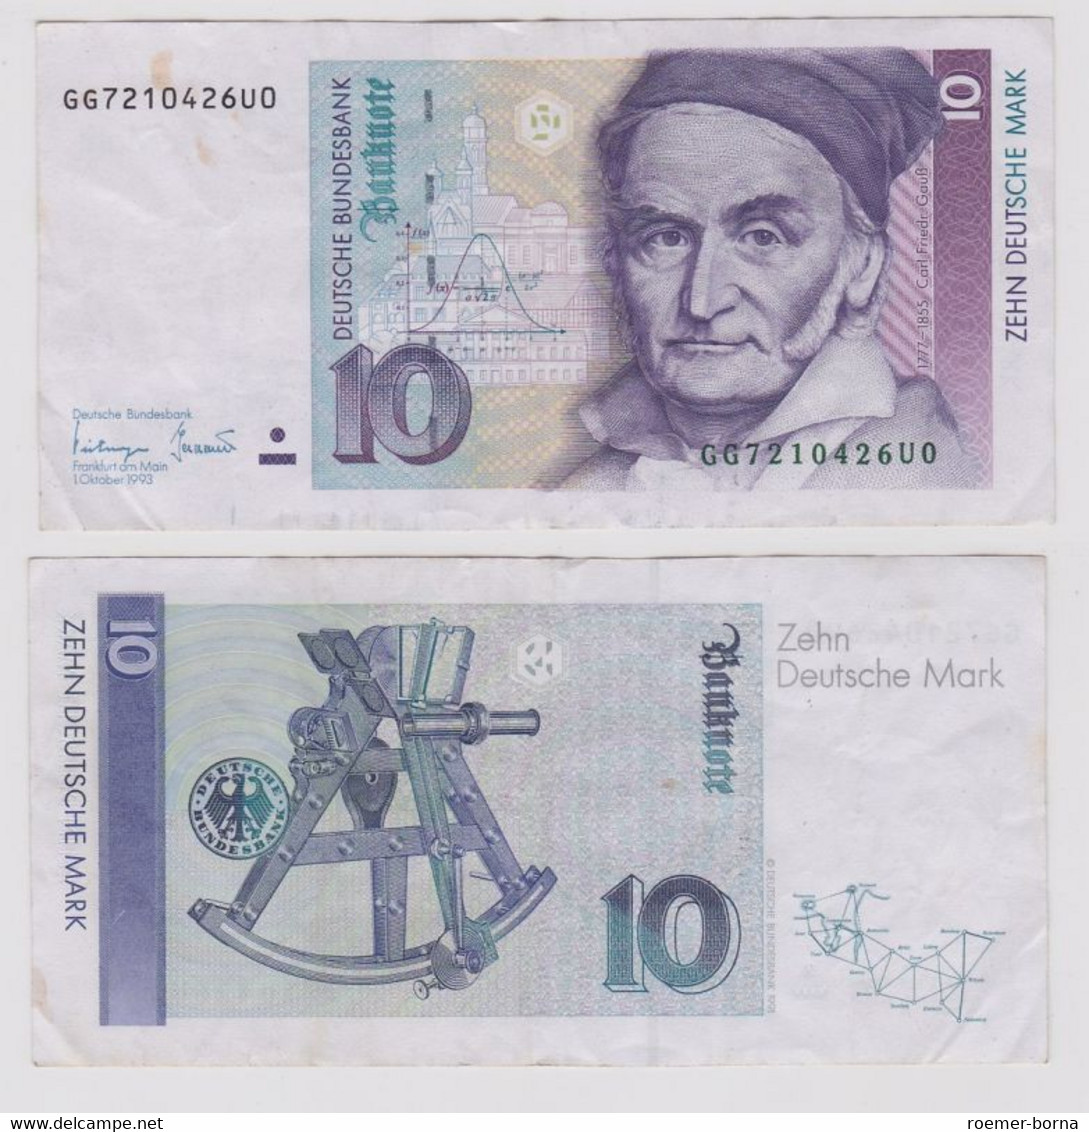 T146757 Banknote 10 DM Deutsche Mark Ro. 303a Schein 1.Okt. 1993 KN GG 7210426U0 - 10 DM